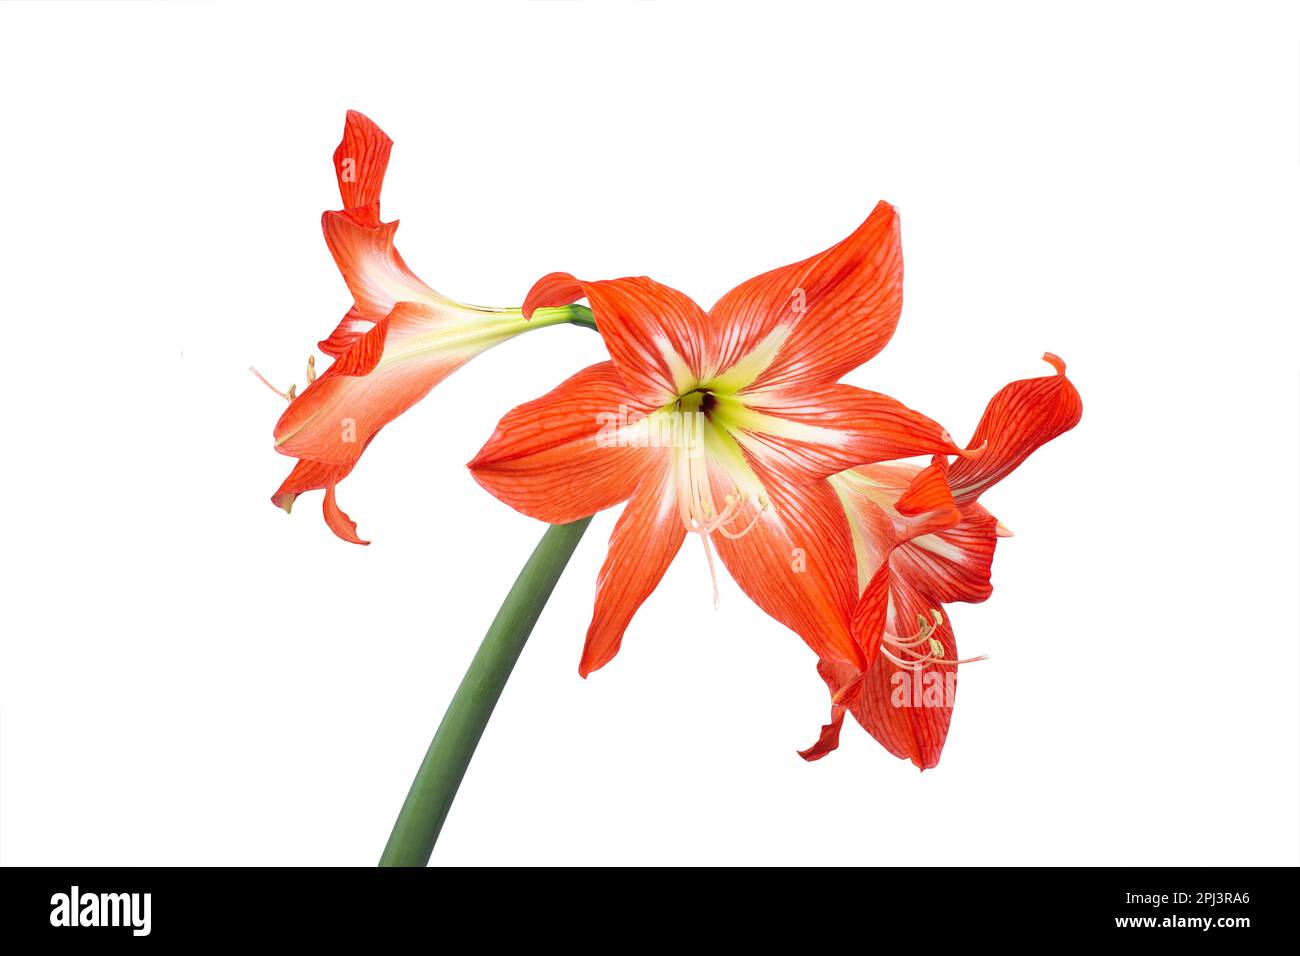 Fleur d'amaryllis rouge vif sur fond blanc macro photographie. Amaryllis en fleurs avec pétales écarlate photo de gros plan. Photo isolée d'un li rouge Banque D'Images